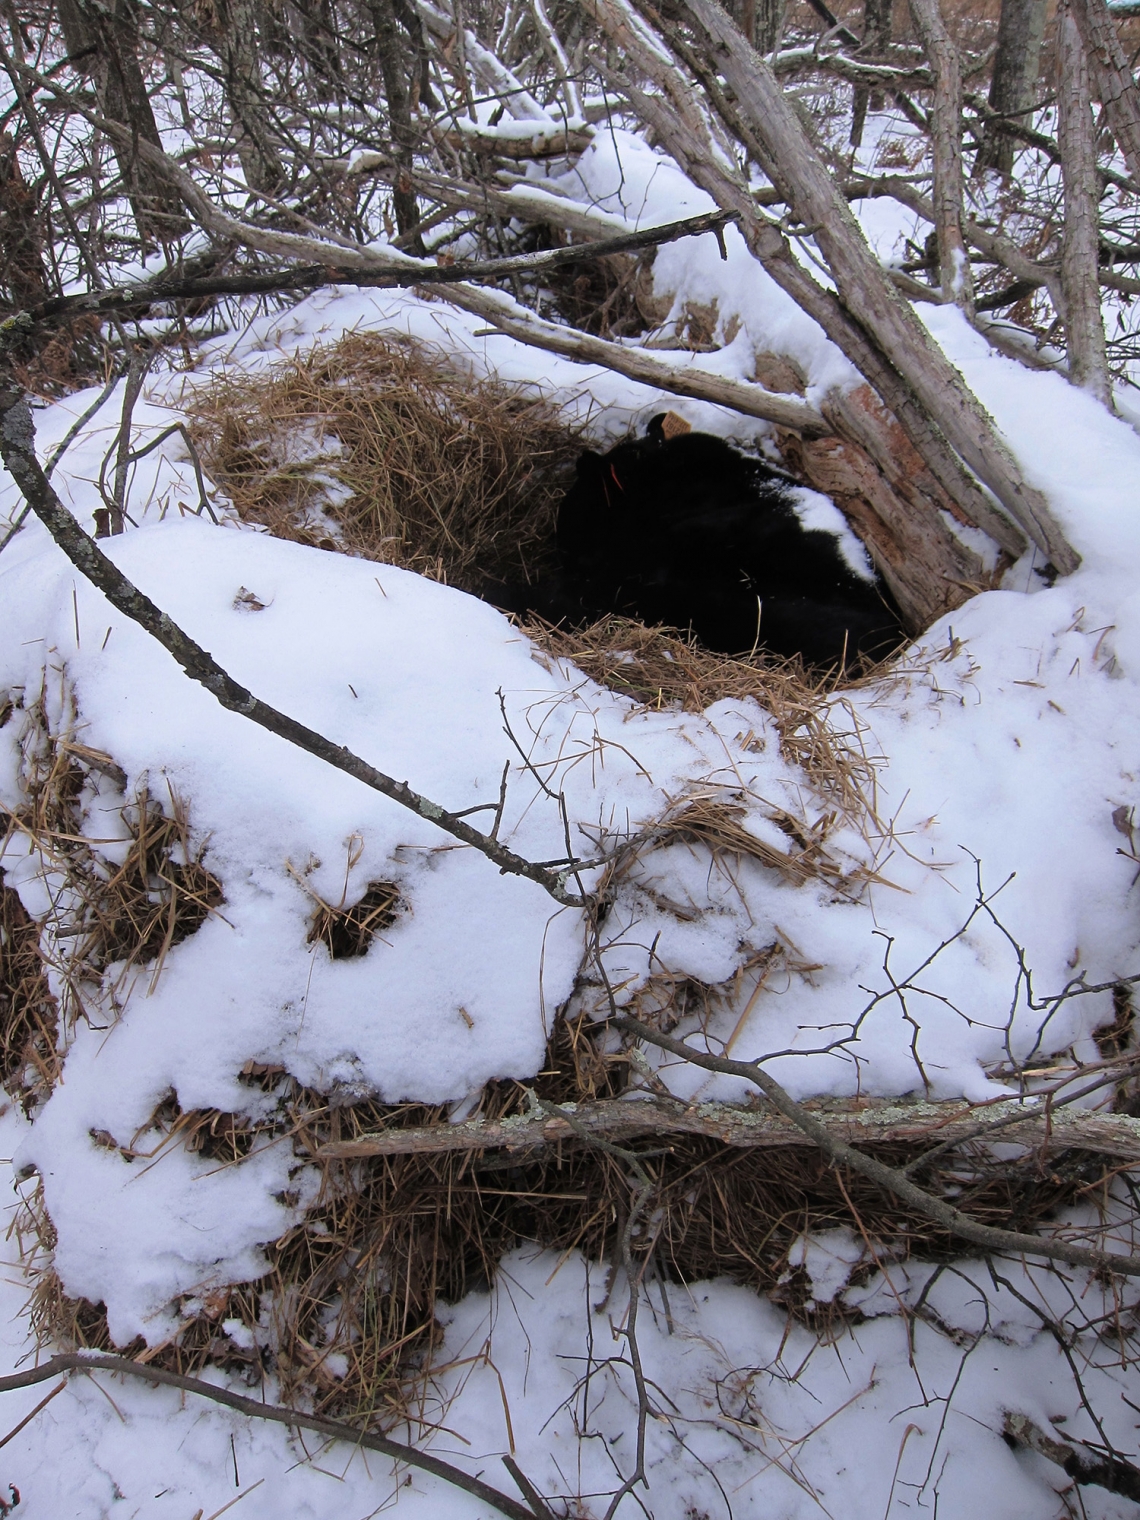 American black bear_U americanus Minnesota_205 kg male bear in nest den_D Garshelis